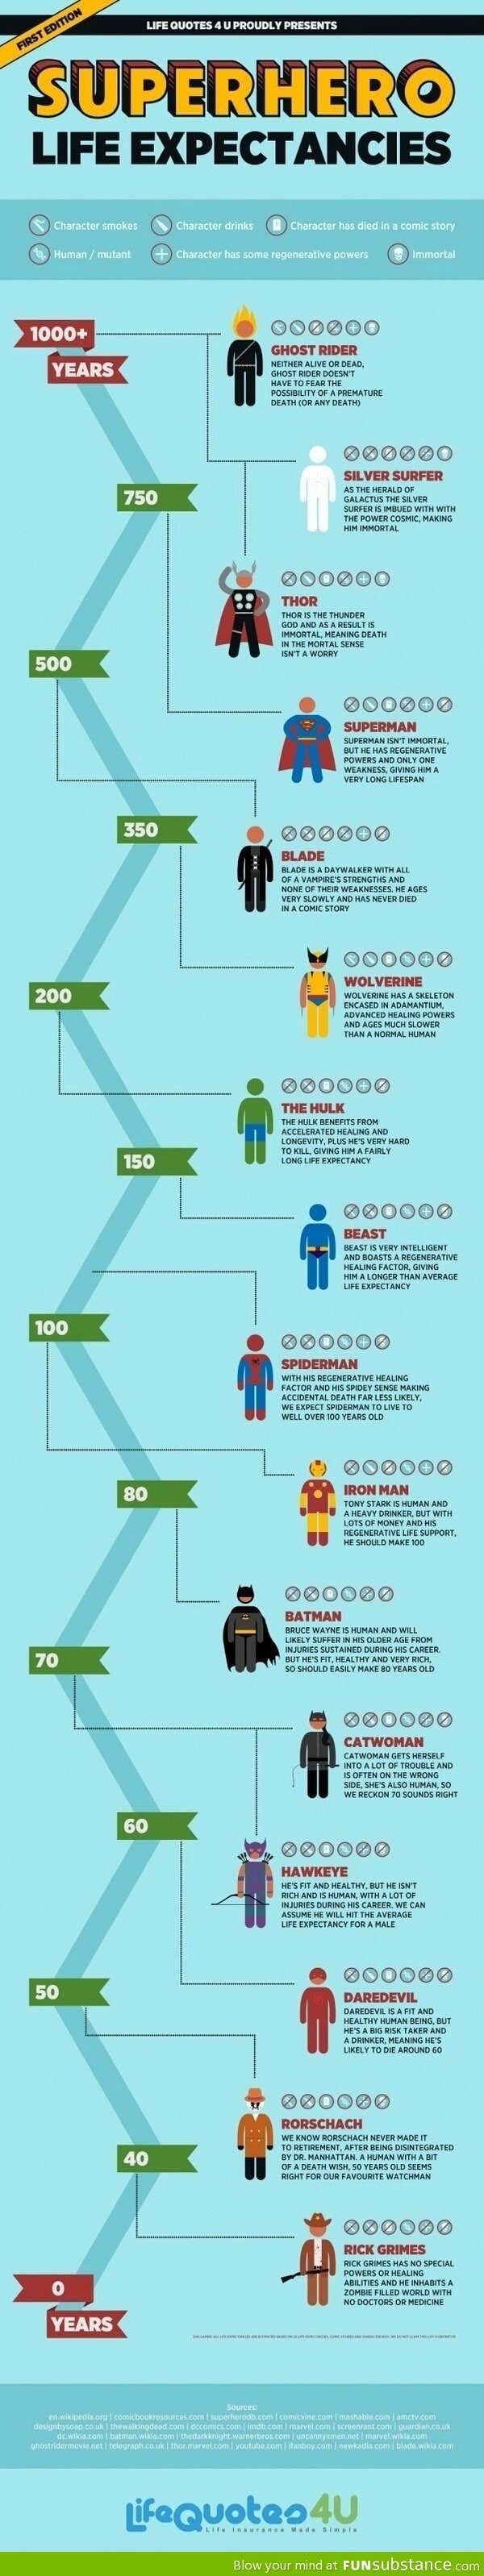 Superhero life expectancies